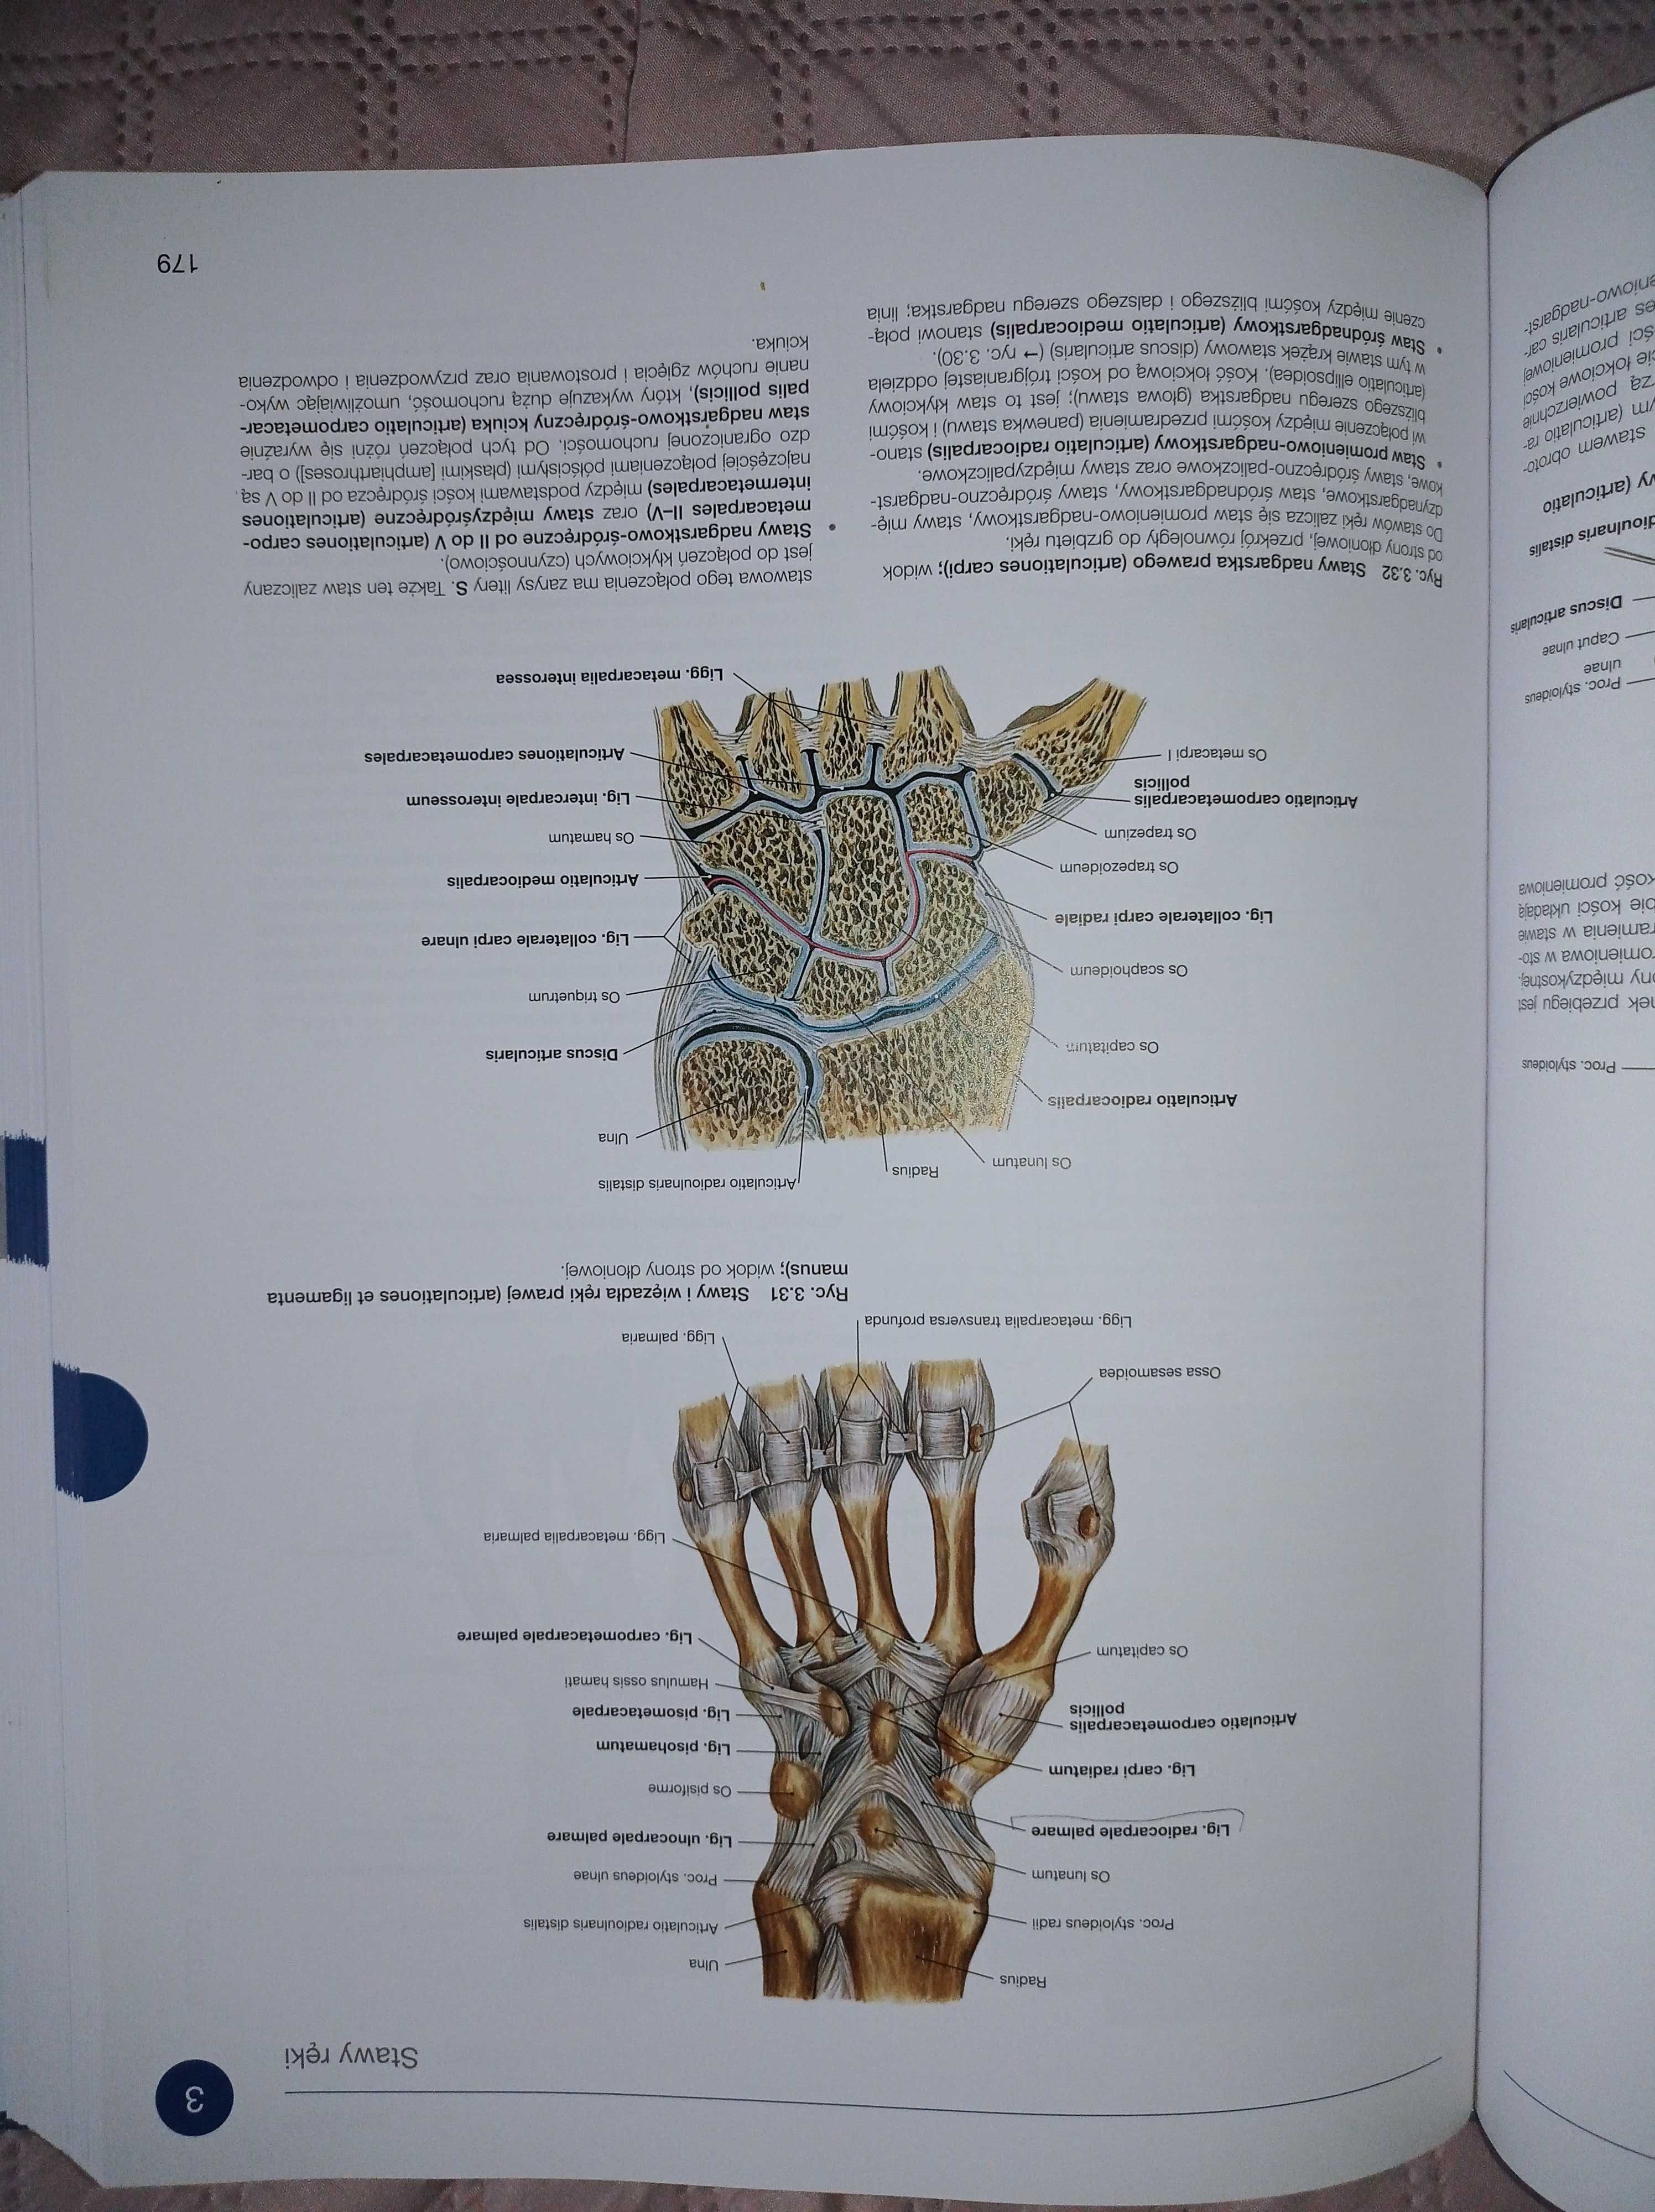 Zestwa atlasów anatomii człowieka Sobotta